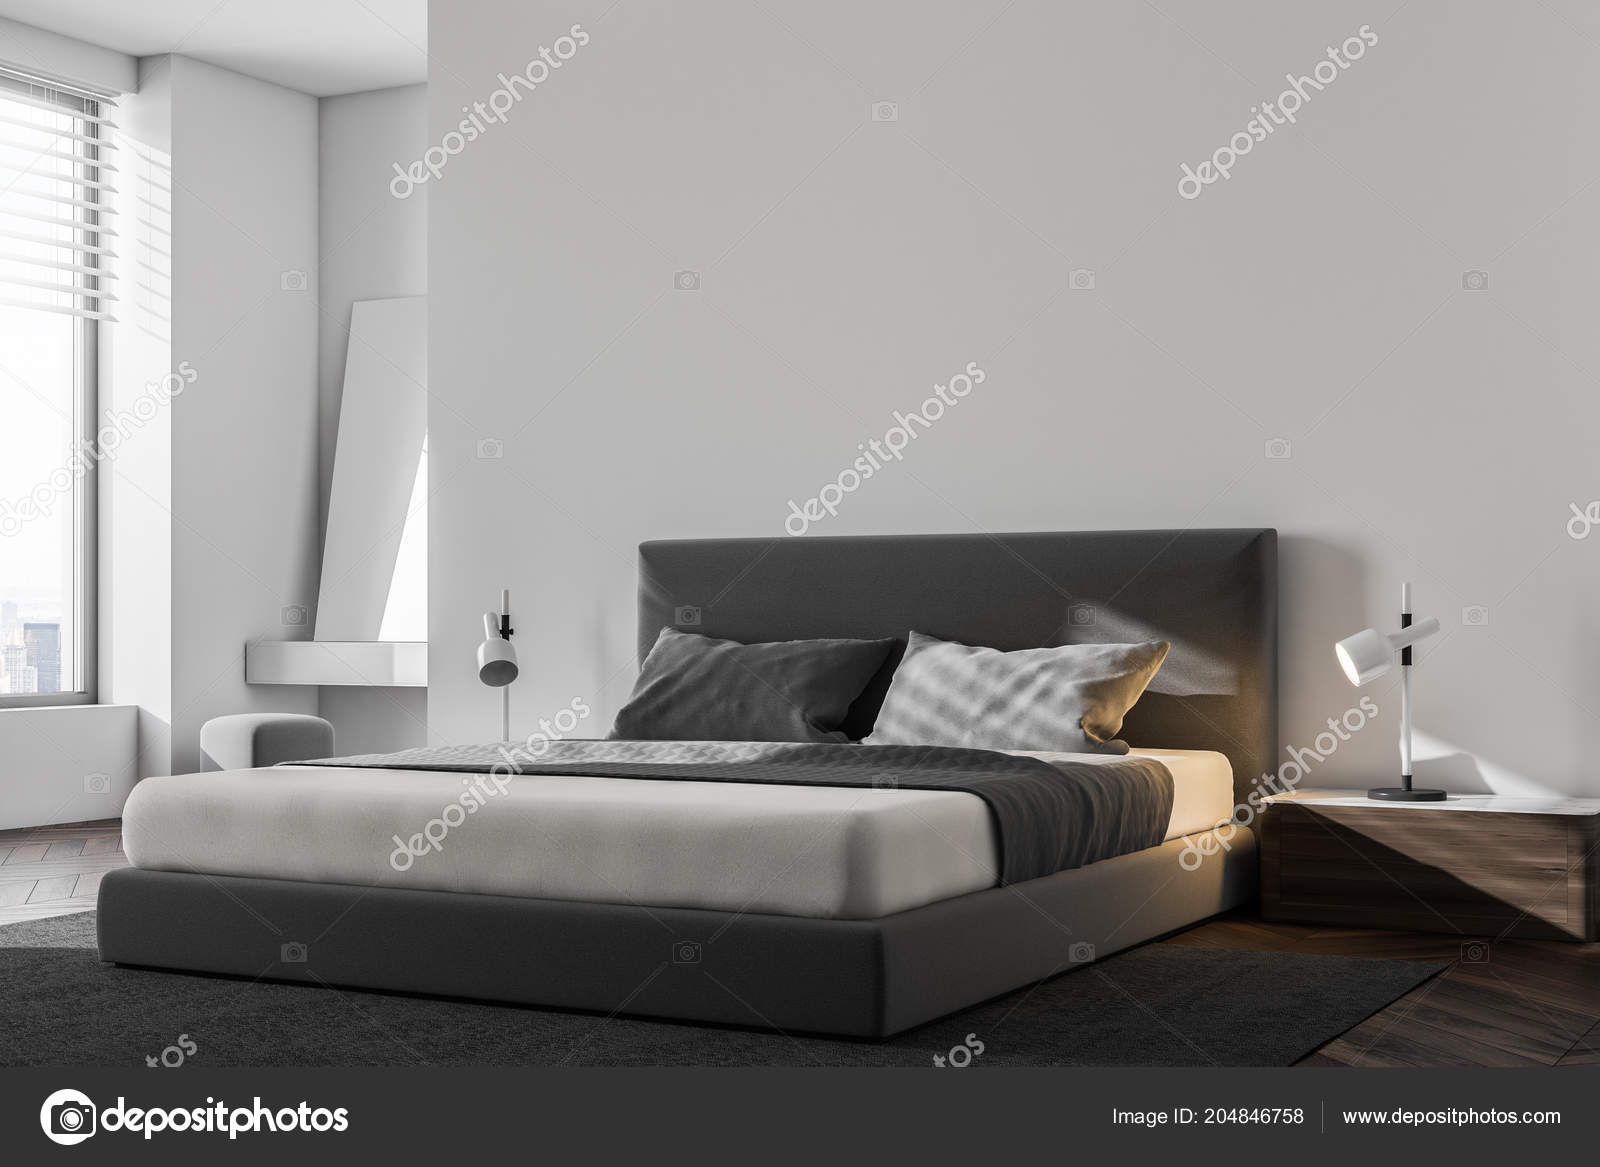 Luxury Bedroom Corner White Walls Wooden Floor King Size Bed